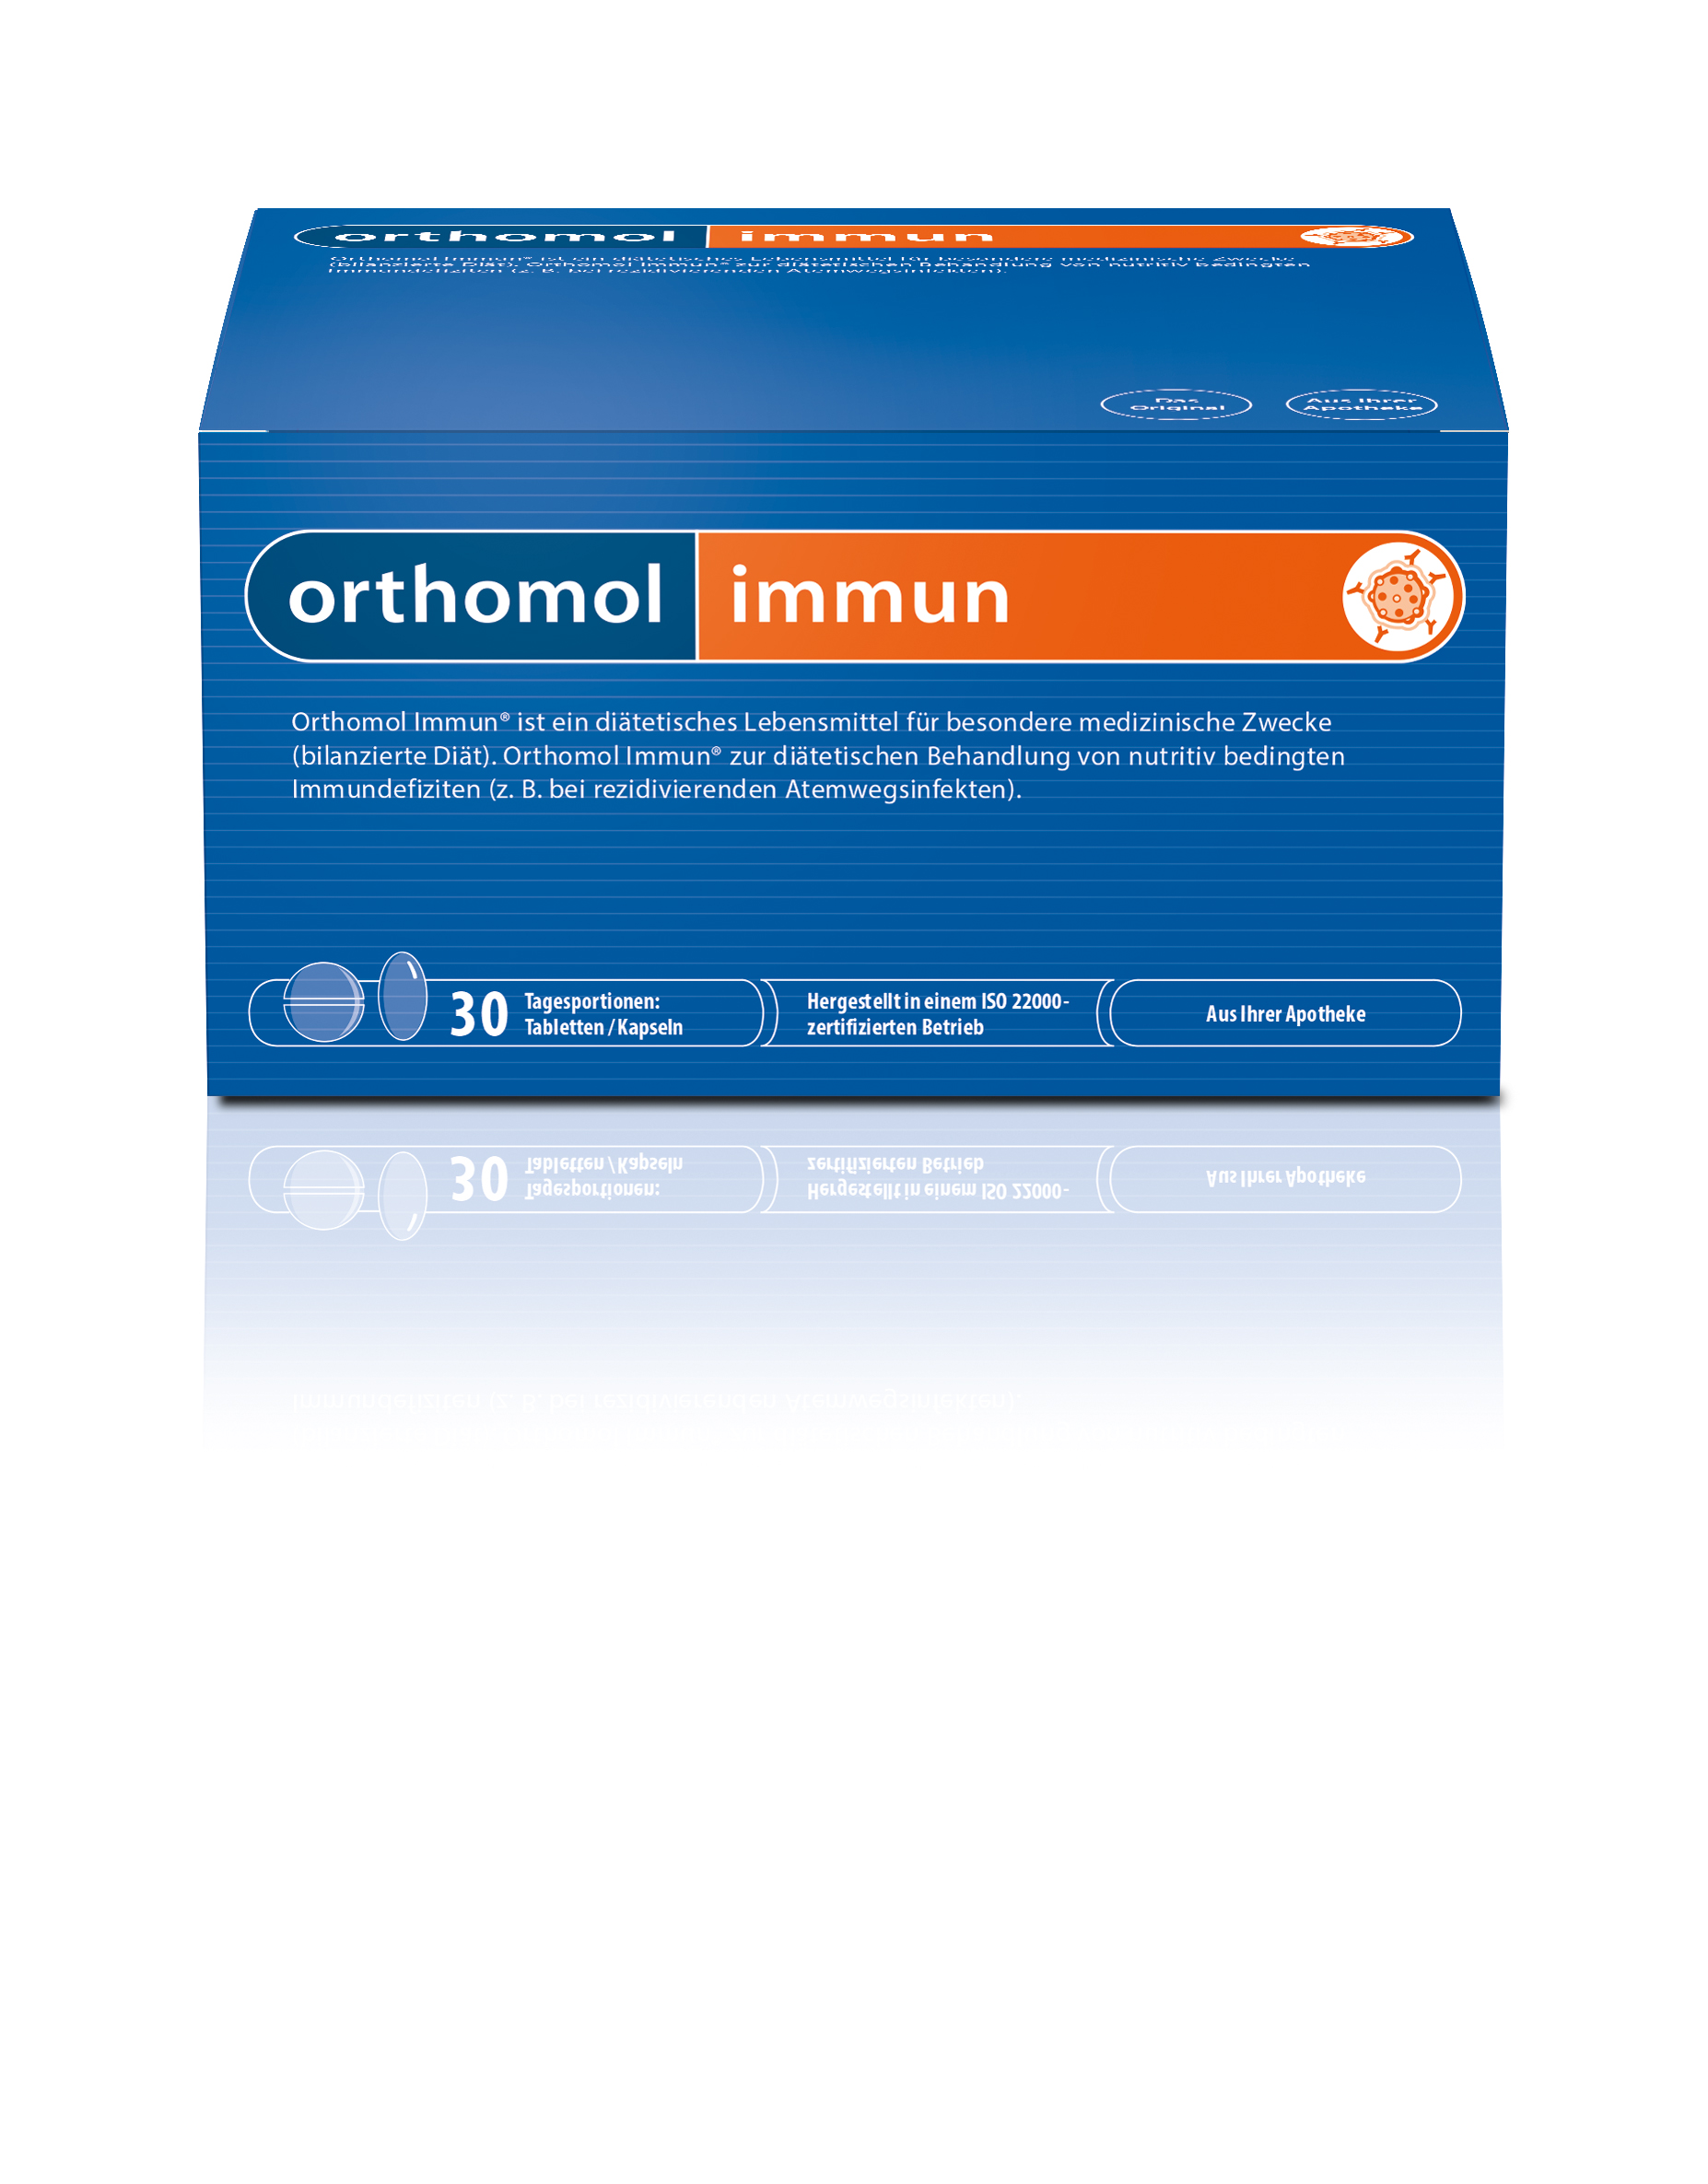 Orthomol Immun 30 Tabletten / Kapseln Kombipackung